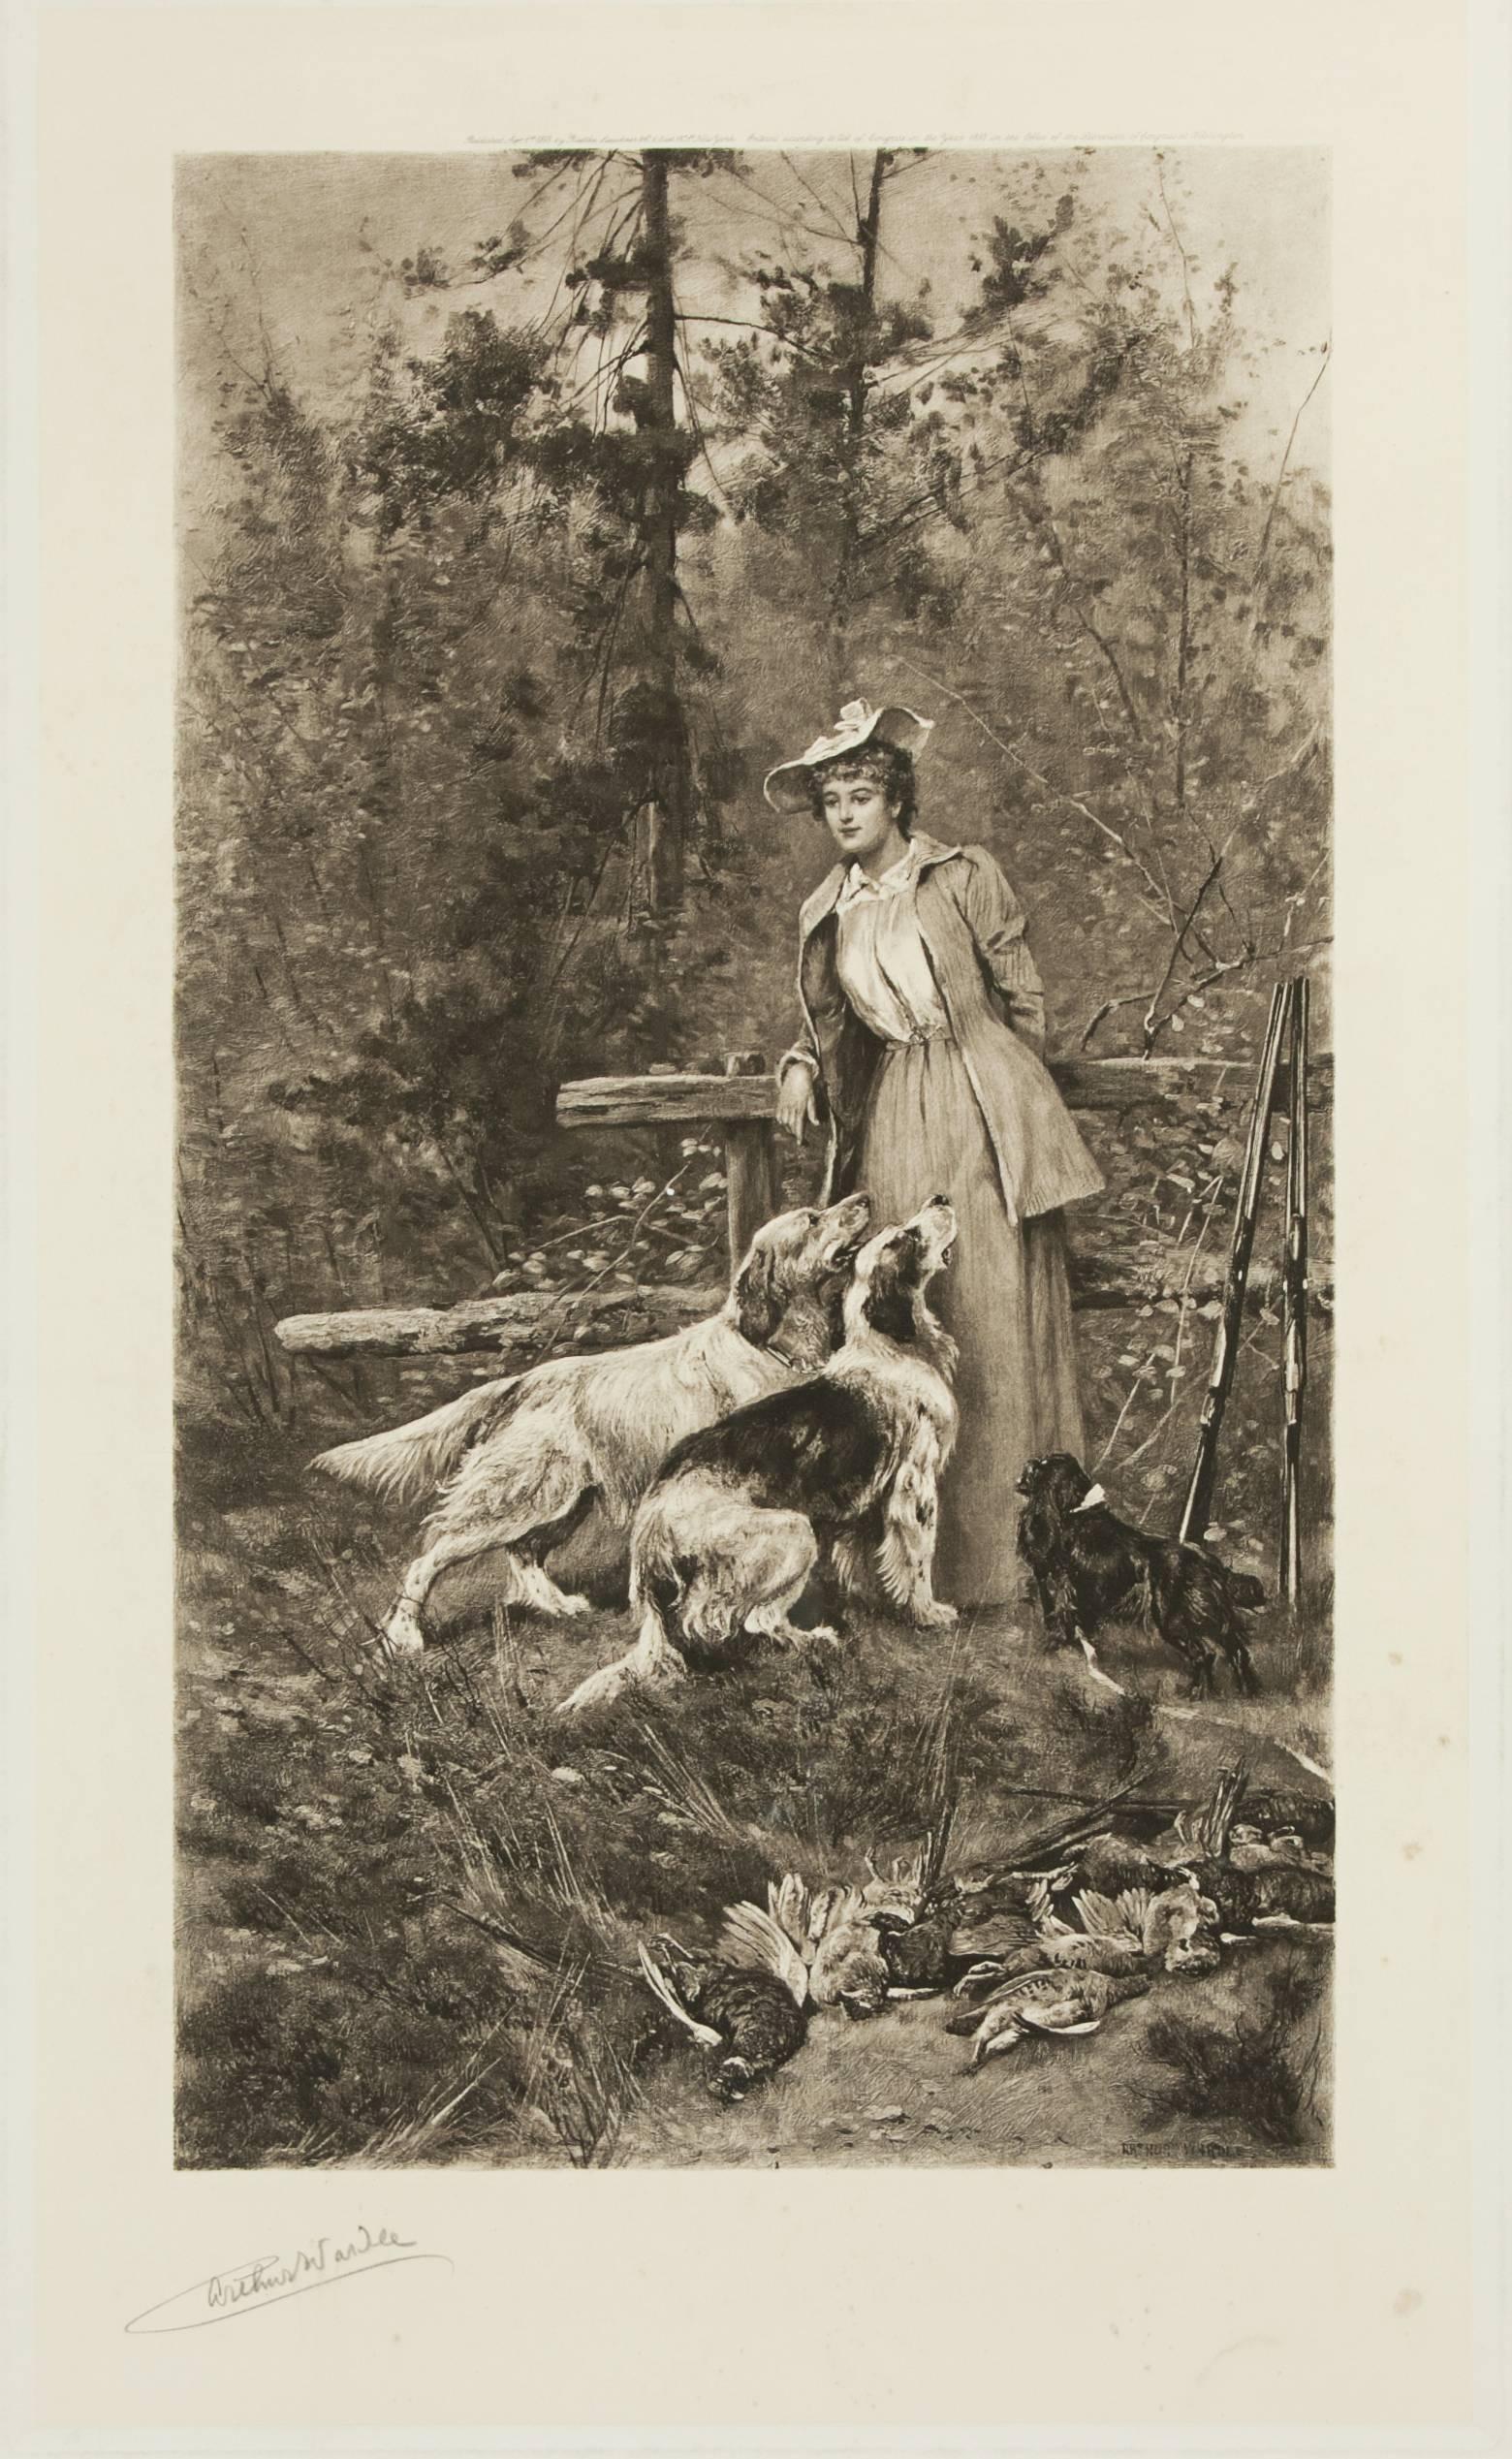 Une rare photogravure de tir d'un sujet féminin par Arthur Wardle. Outre le fait qu'il est inhabituel d'avoir un sujet féminin, c'est aussi un portrait inhabituel. Elle est encadrée et montée dans un cadre en bois moderne. Le tableau de tir féminin